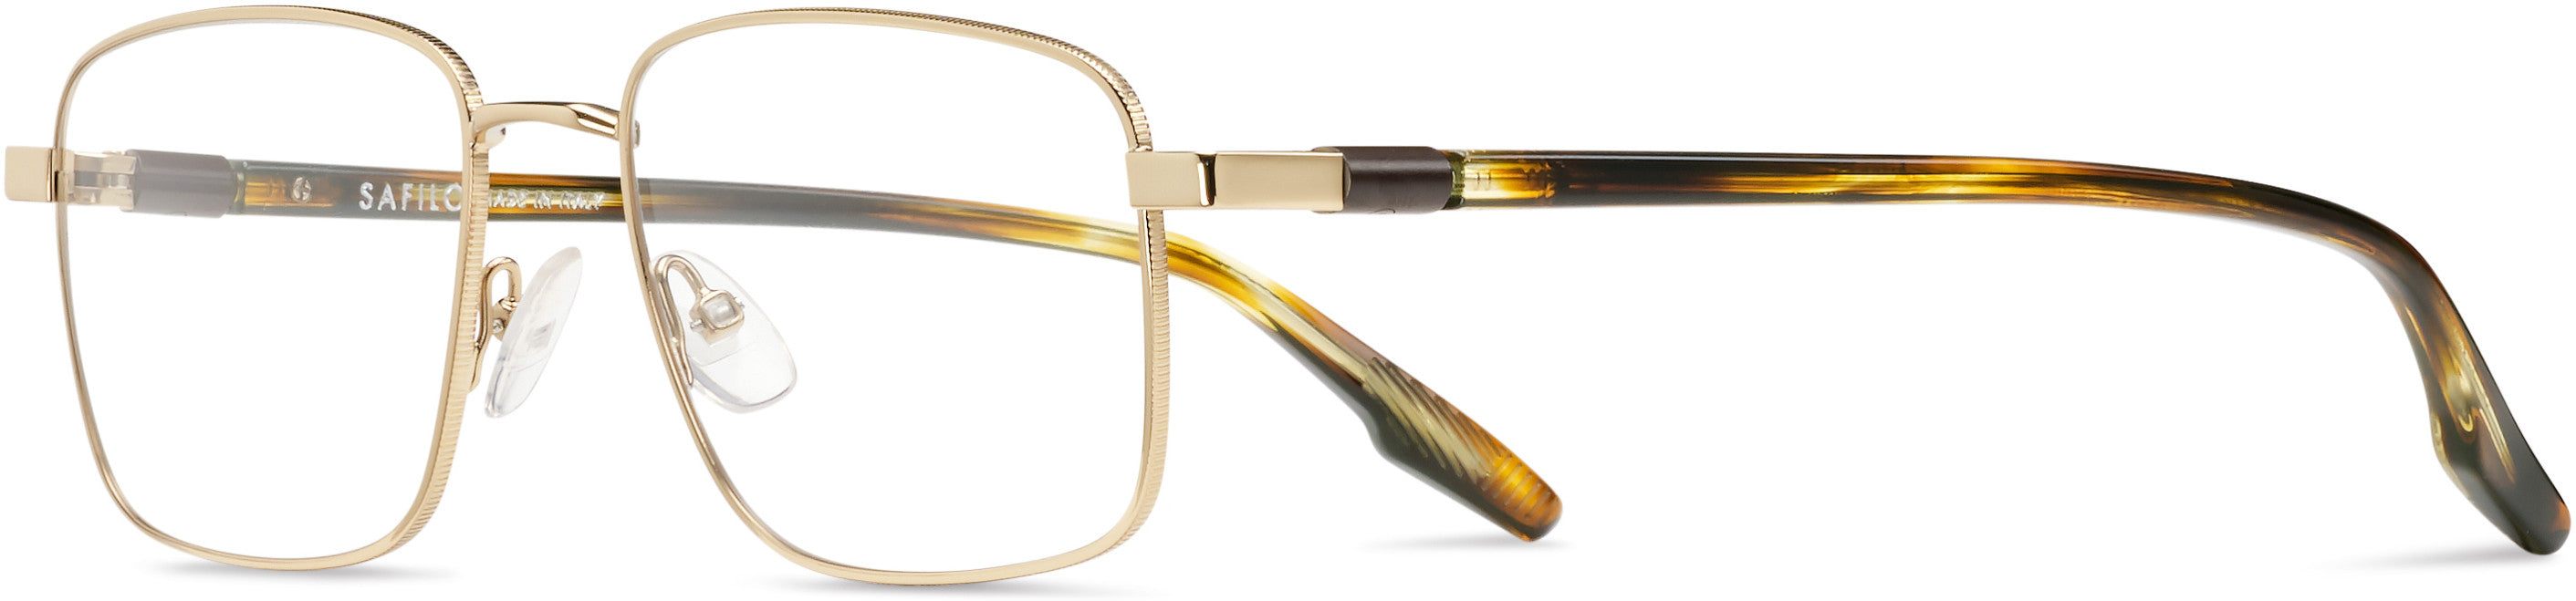 Safilo 2.0 Bussola 07 Rectangular Eyeglasses 0J5G-0J5G  Gold (00 Demo Lens)